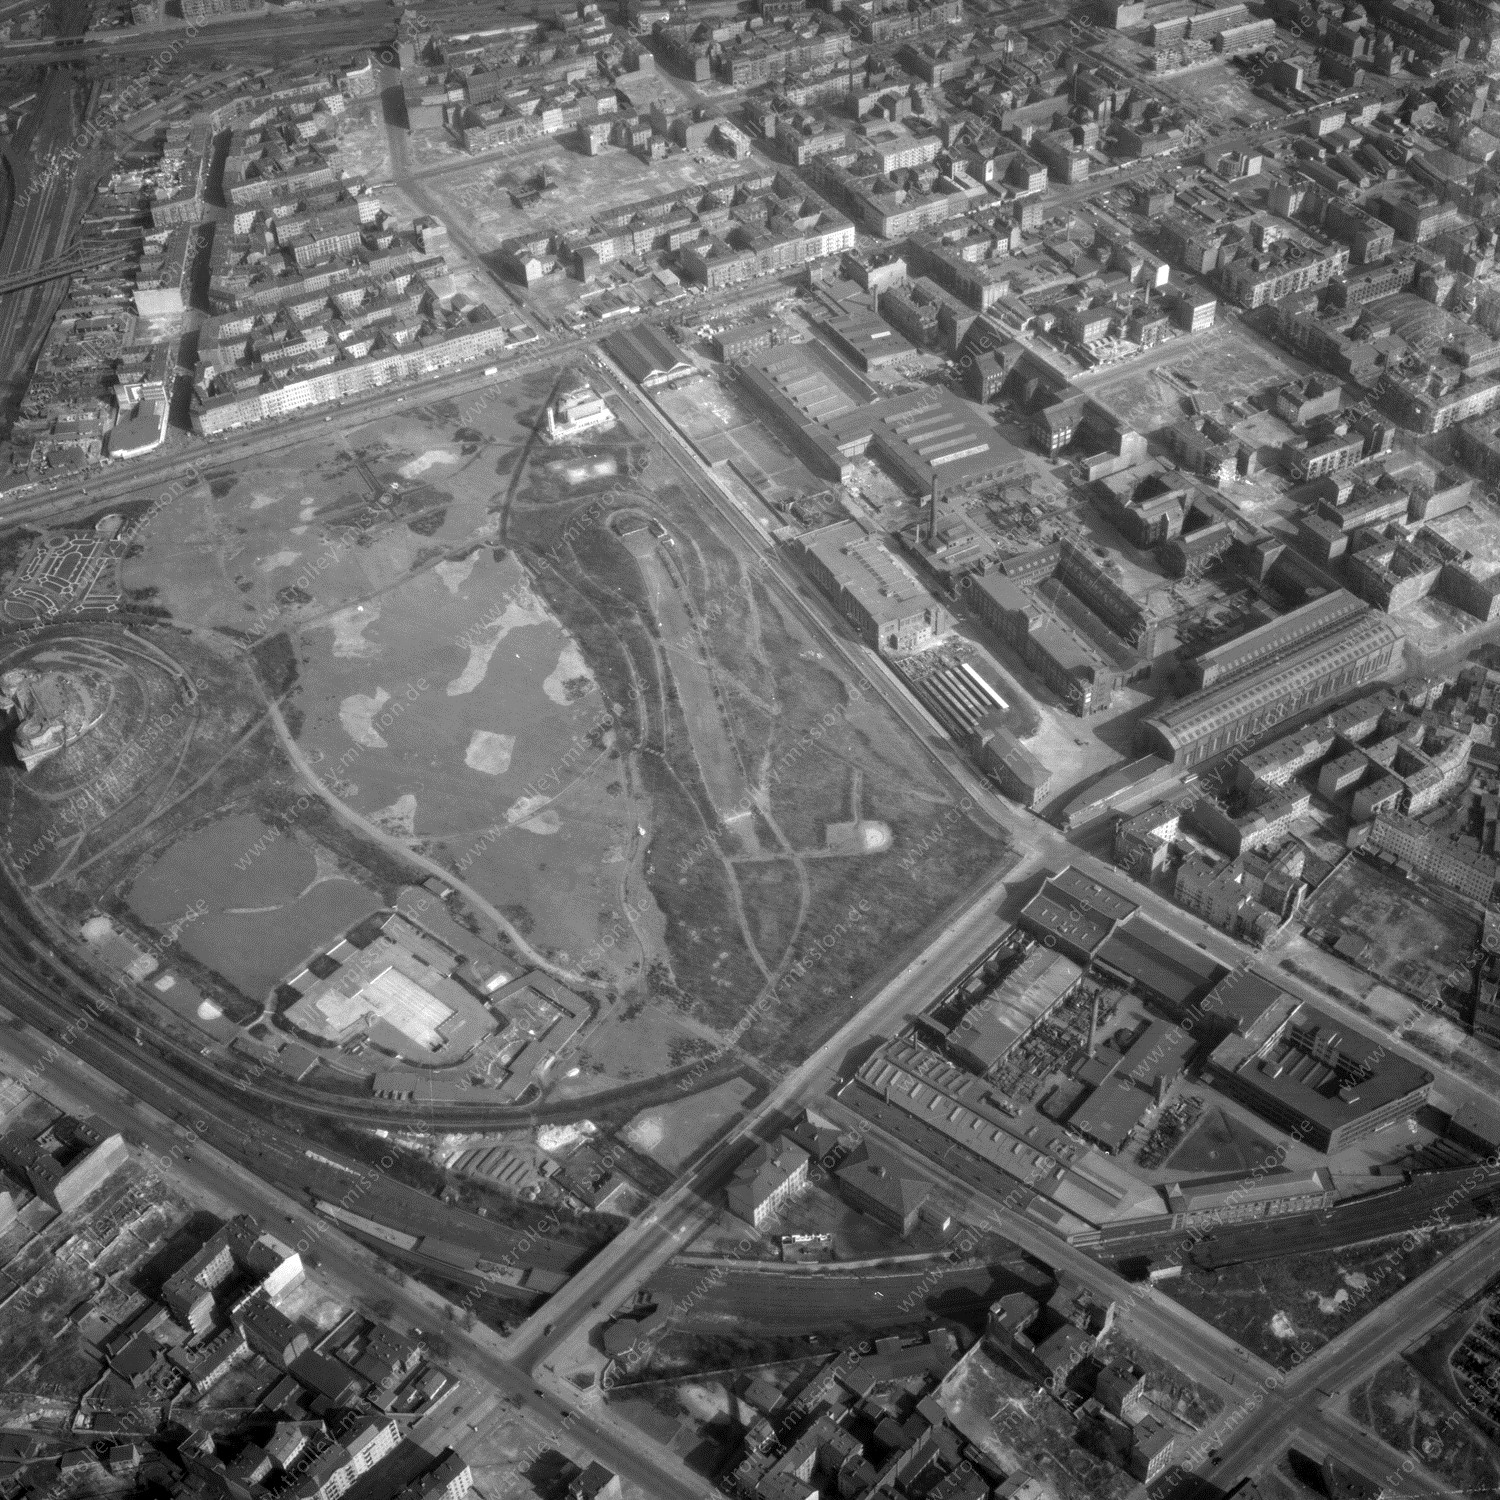 Alte Fotos und Luftbilder von Berlin - Luftbildaufnahme Nr. 07 - Historische Luftaufnahmen von West-Berlin aus dem Jahr 1954 - Flugstrecke Romeo